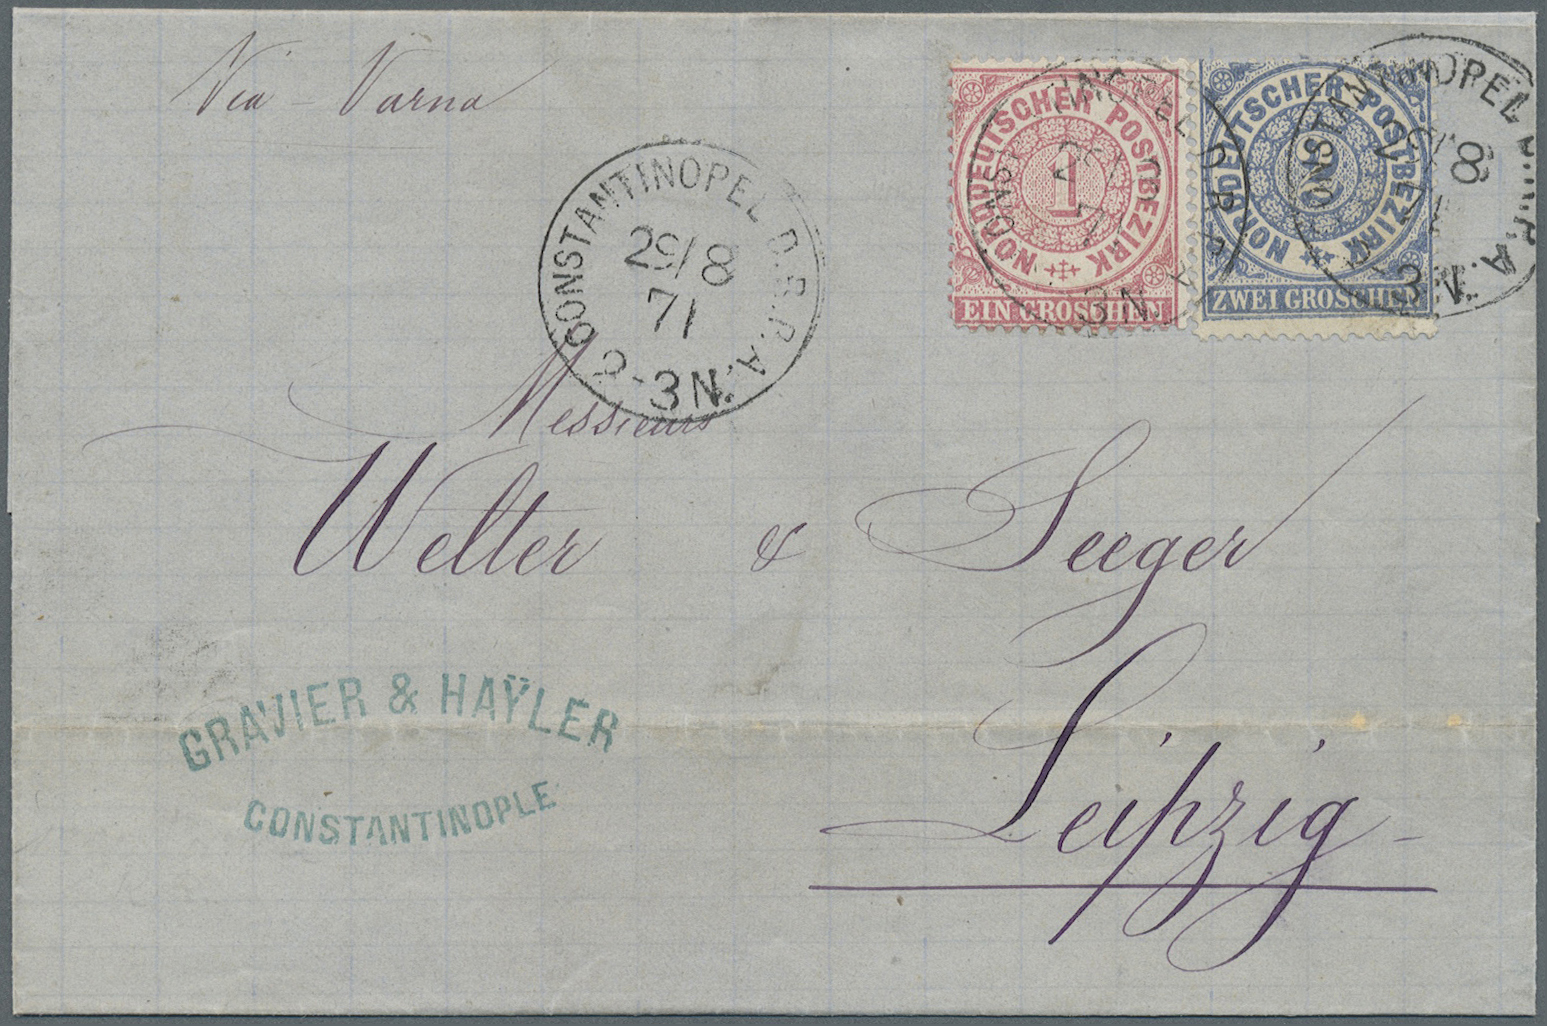 Br Deutsche Post In Der Türkei - Vorläufer: 1871, Norddeutsche Postagentur, 1 Und 2 Groschen Ziffernzei - Turkse Rijk (kantoren)